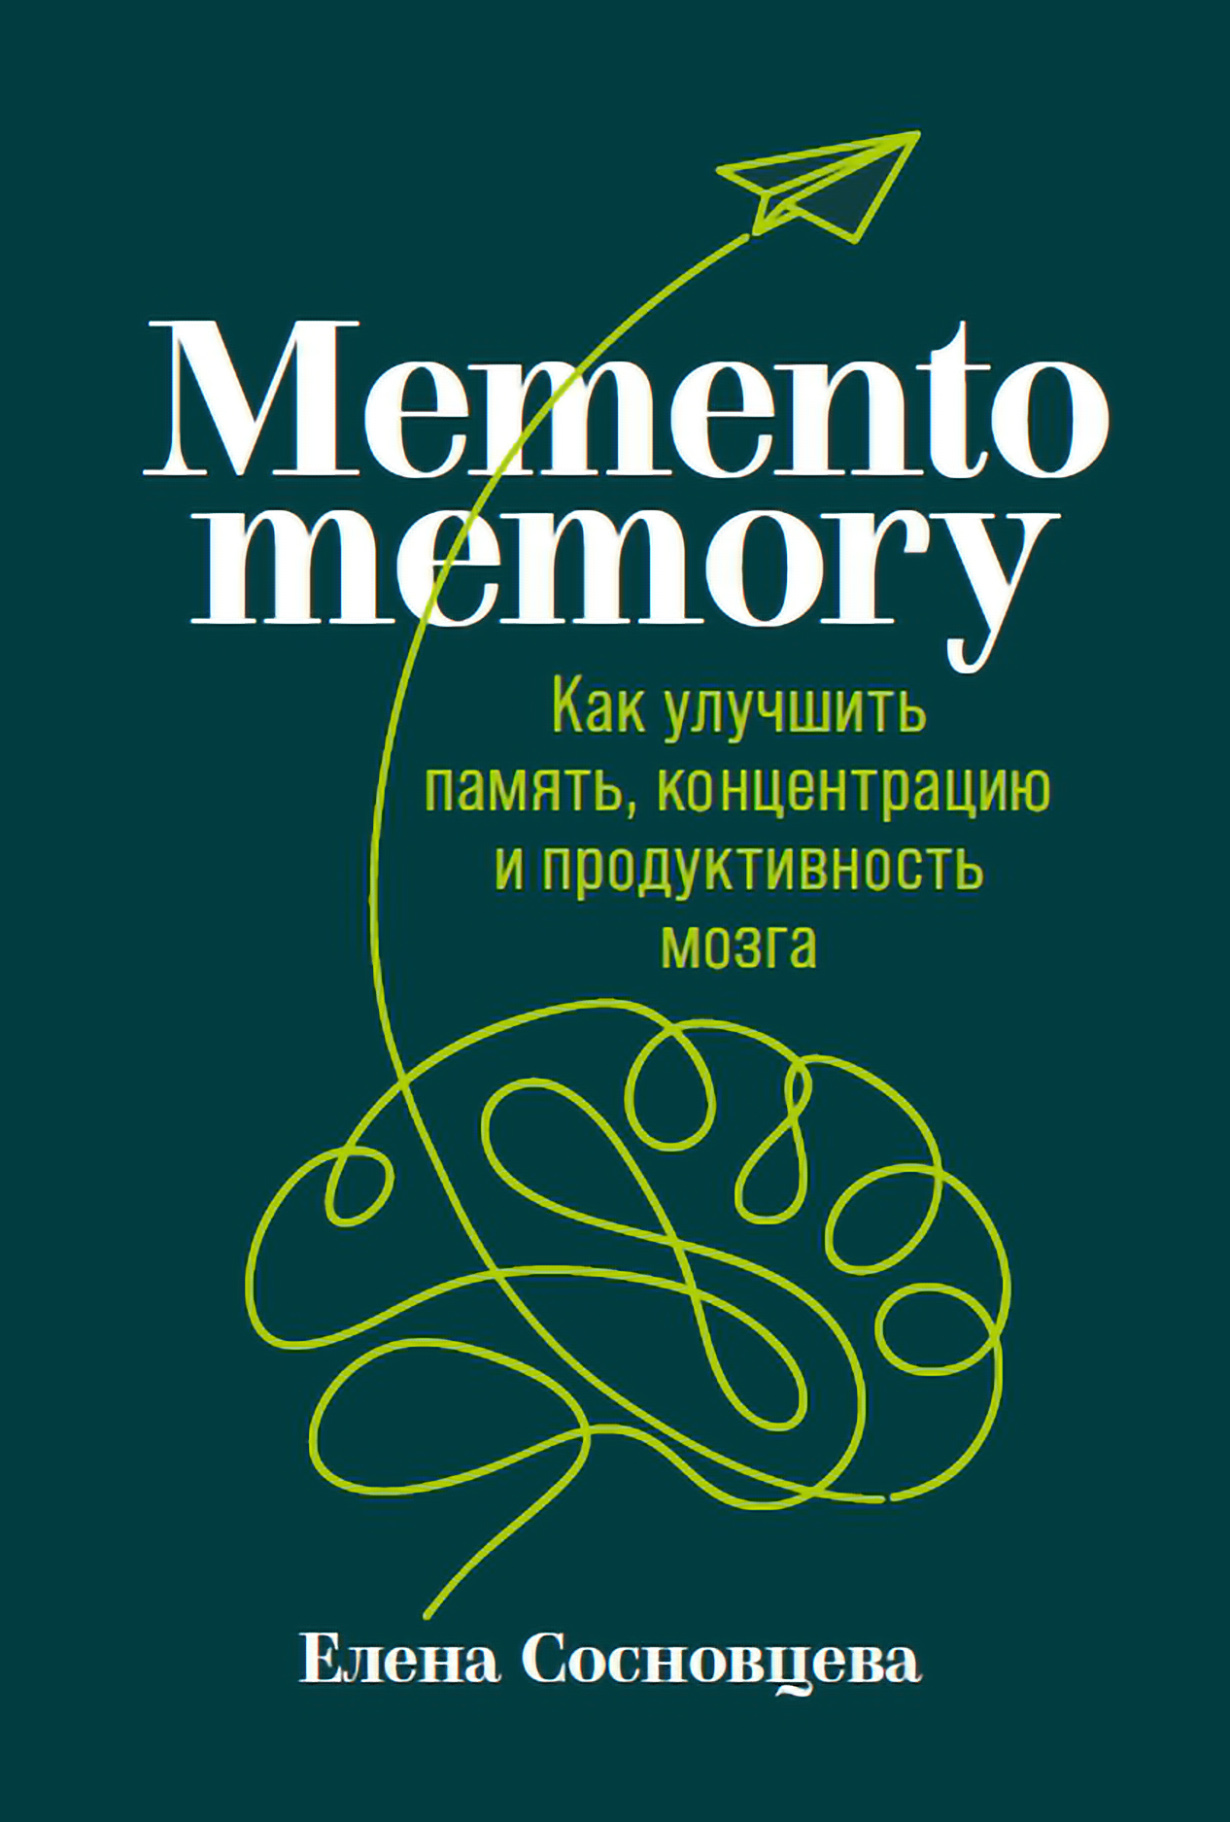 Как улучшить память взрослому человеку